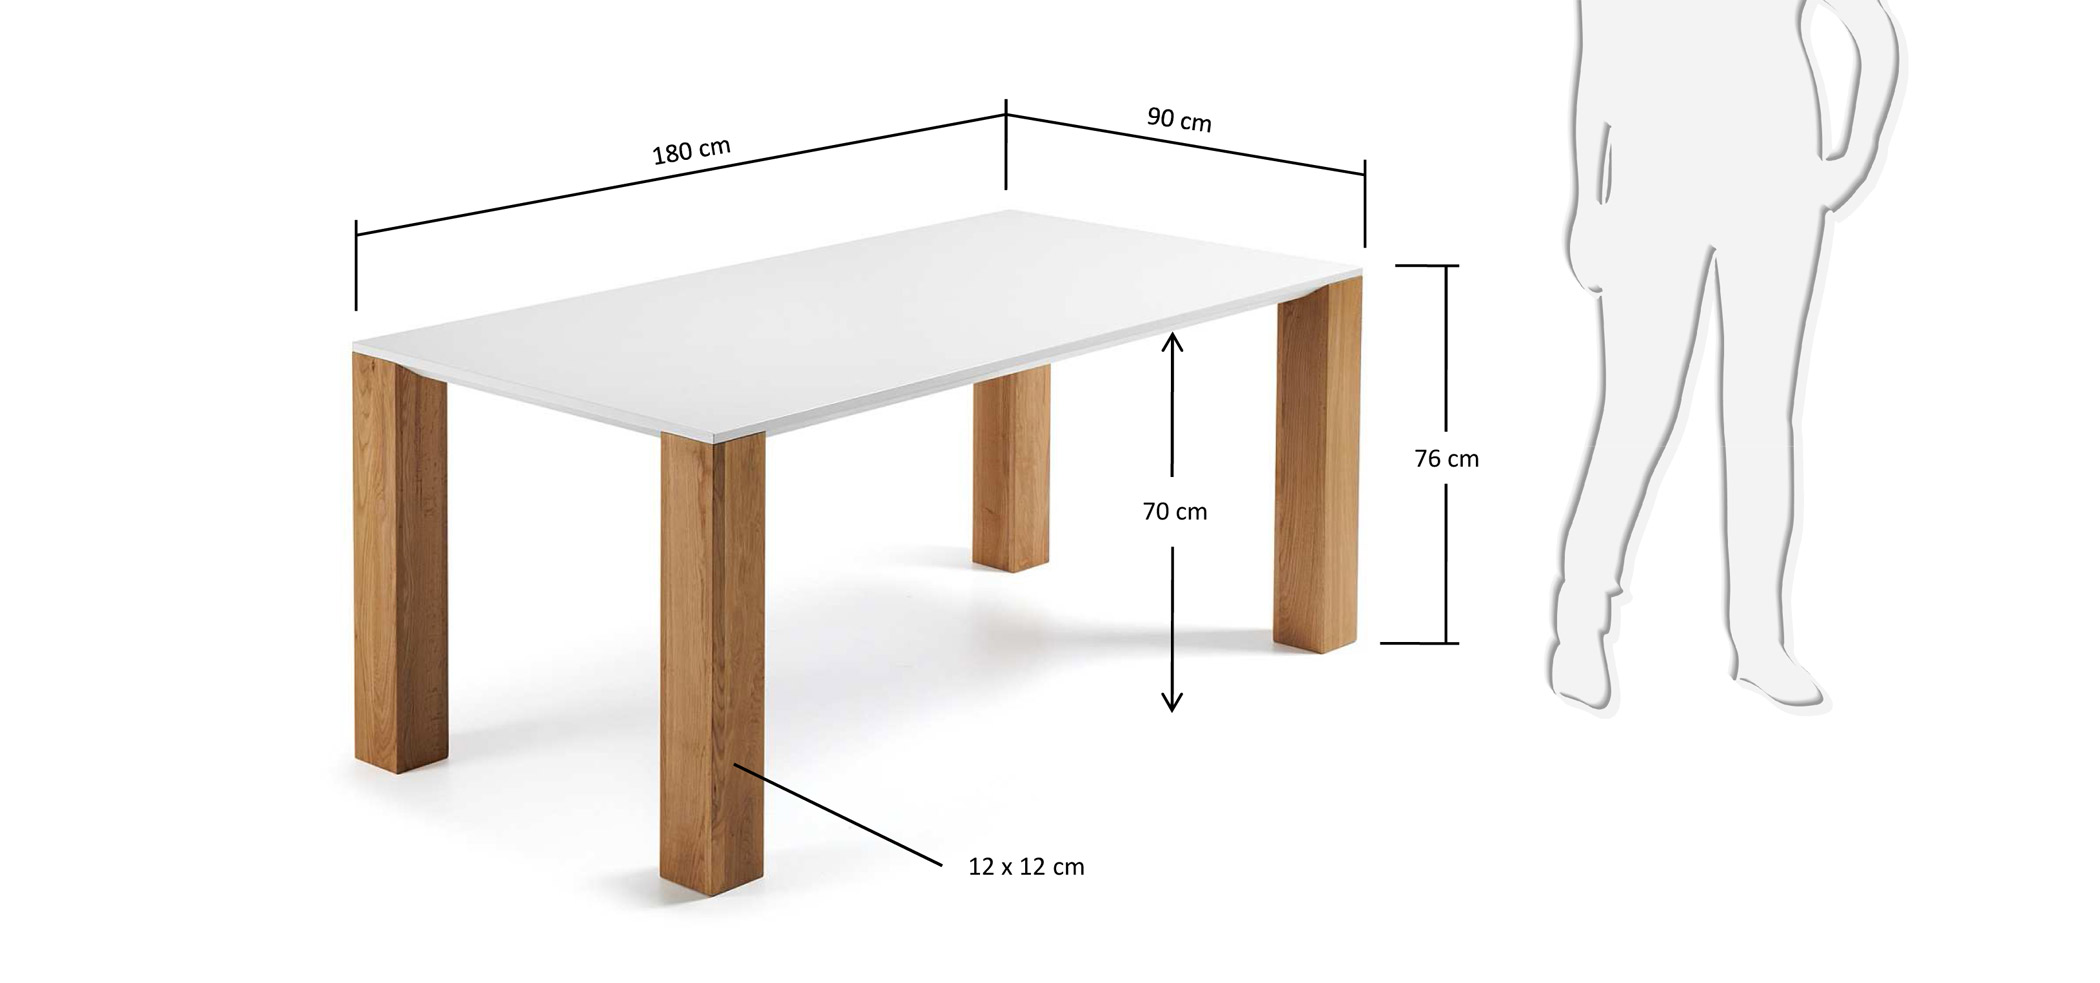 Длина стола на 4 персоны